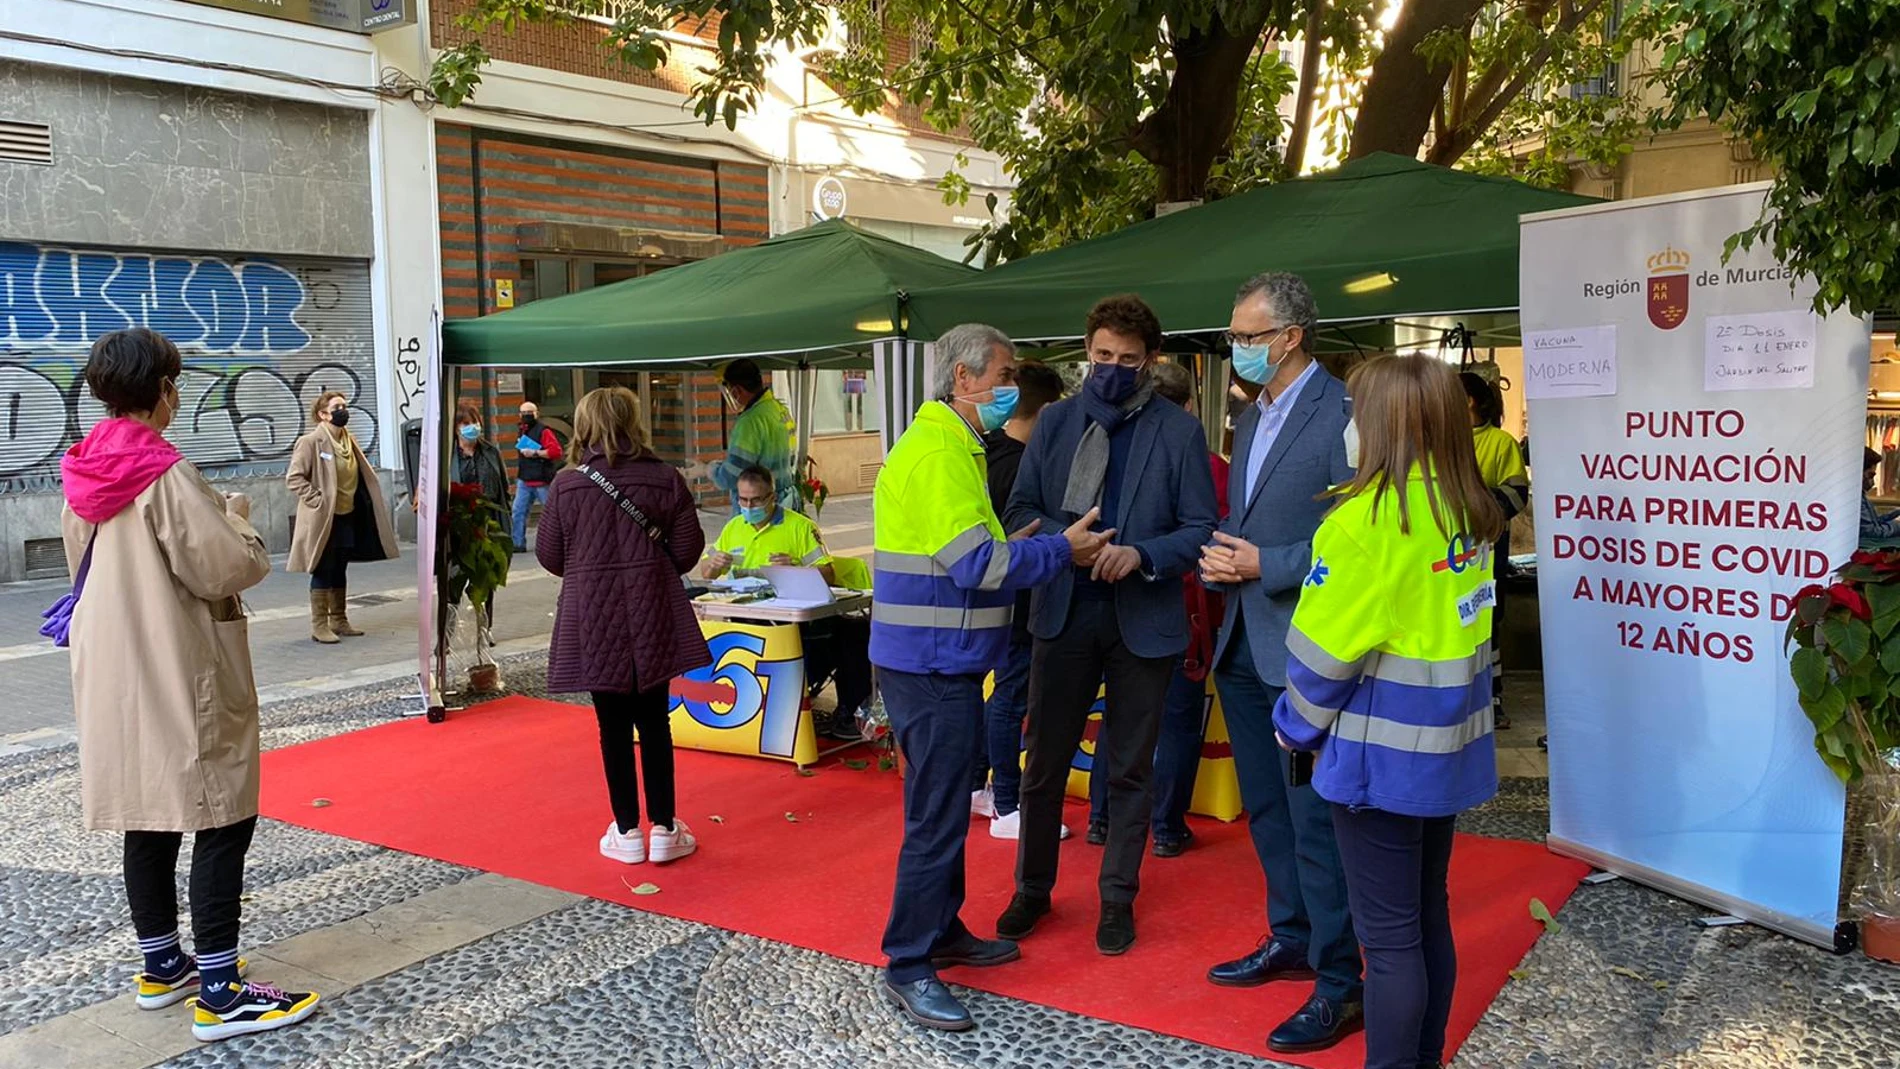 El consejero de Salud, Juan José Pedreño, visitó el punto móvil de vacunación para primeras dosis frente al coronavirus y realización de test de antígenos instalado en la ciudad de Murcia.